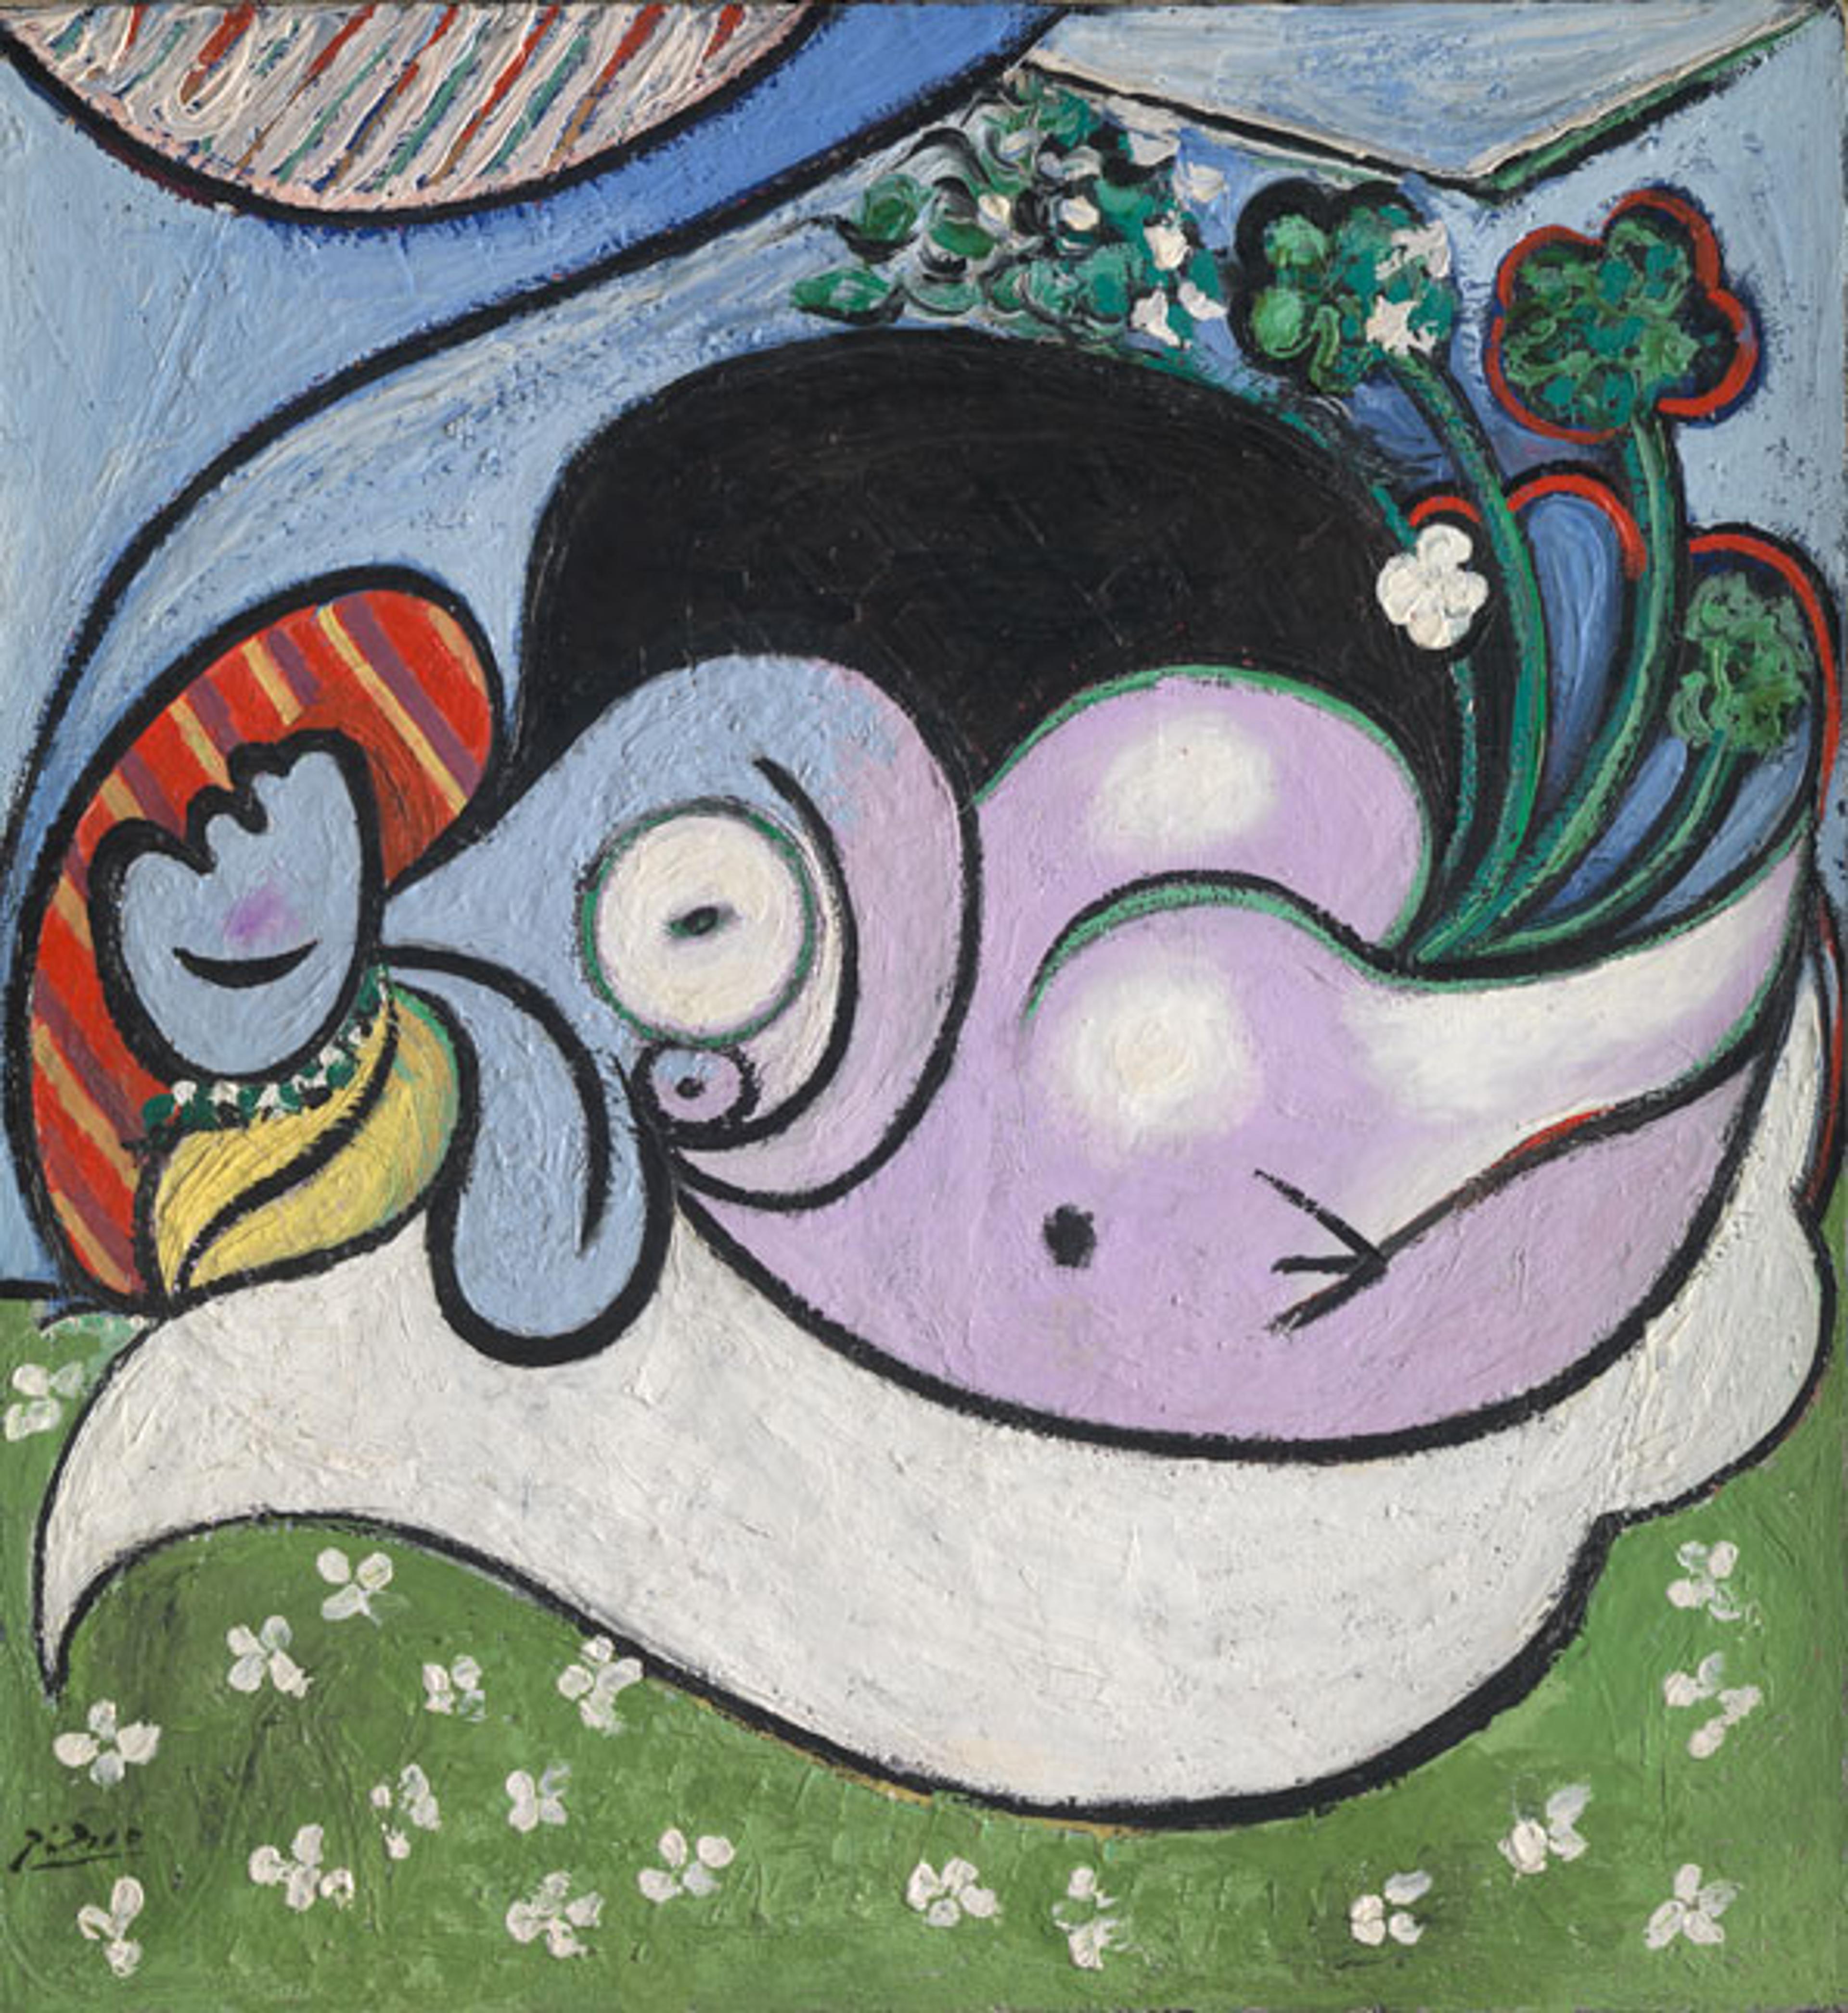 Pablo Picasso. The Dreamer, 1932